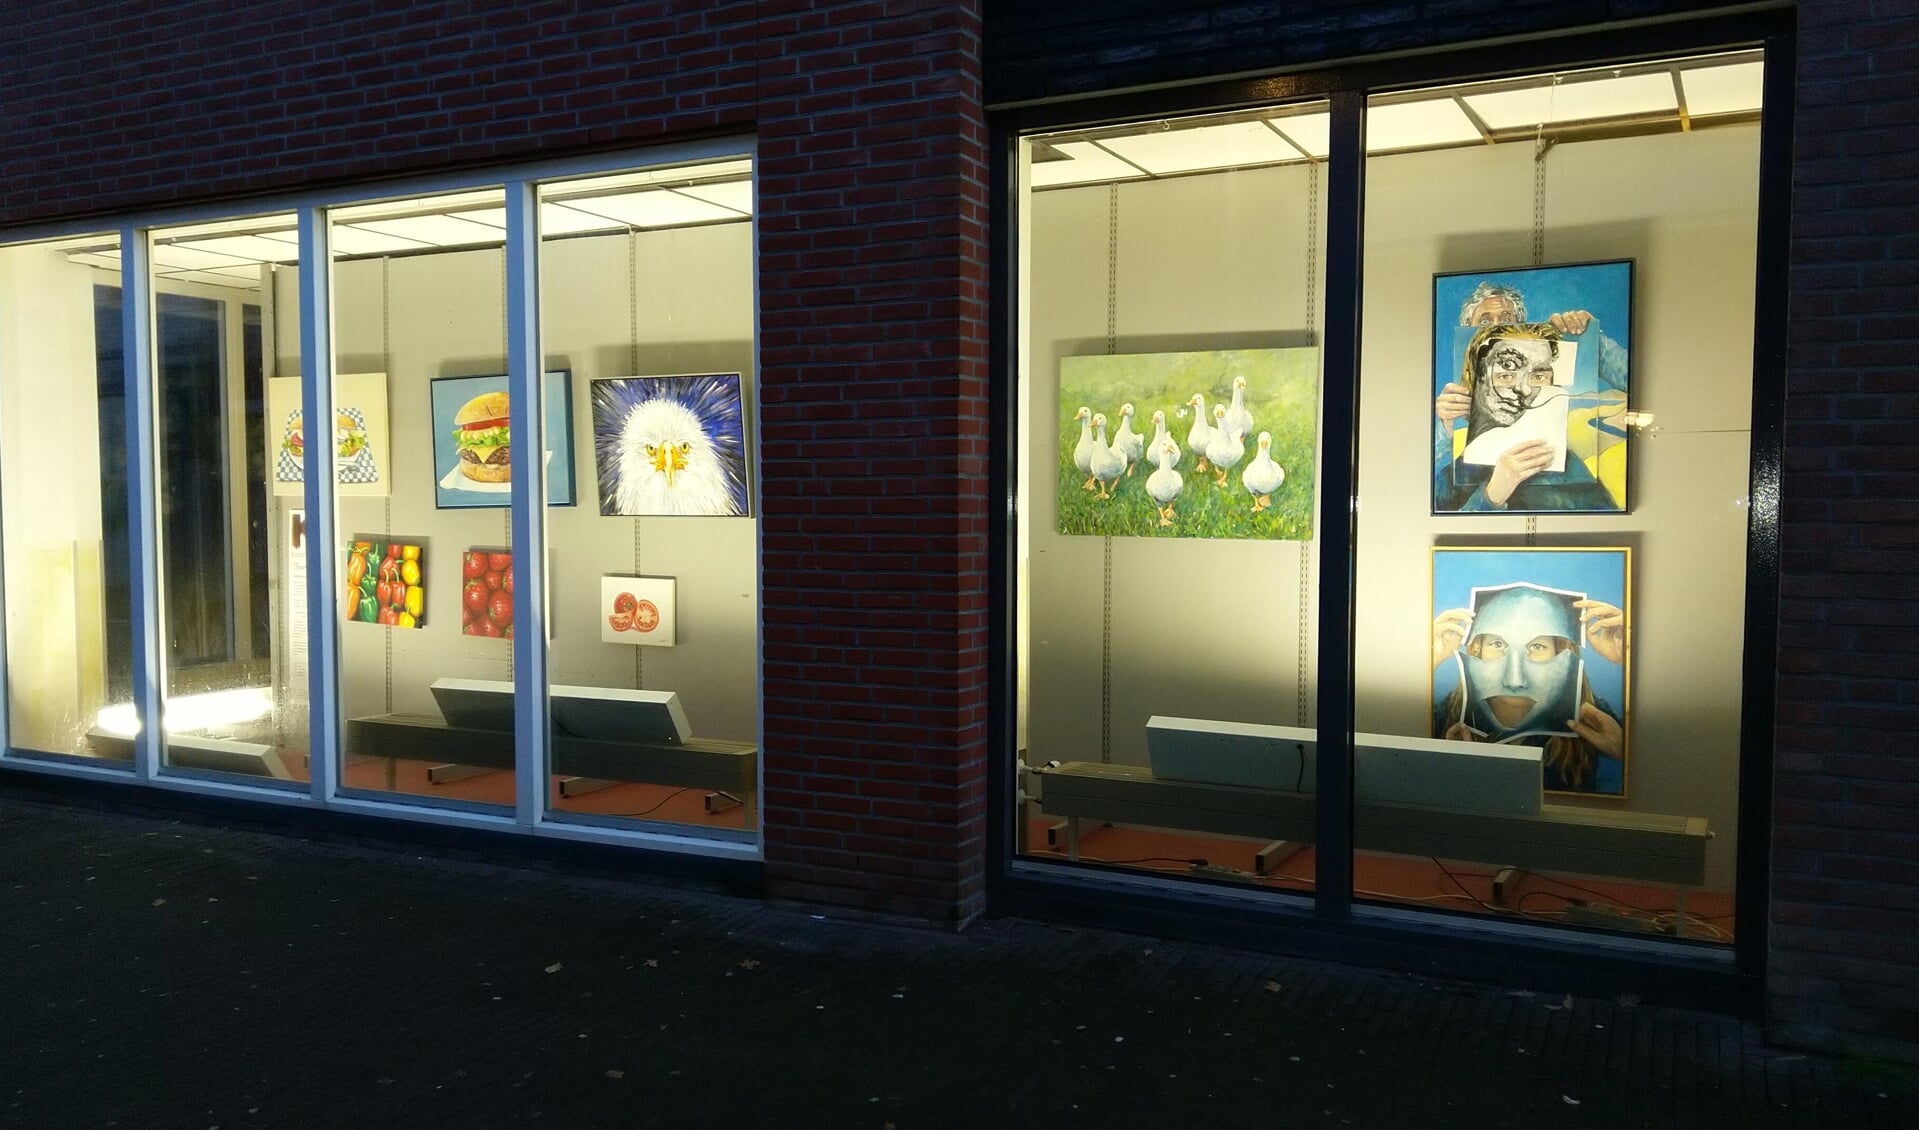 Kunstforum kijkdoosexpositie, etalage Hema Kleine Kerkstraat. FOTO HENDRIK BOOT